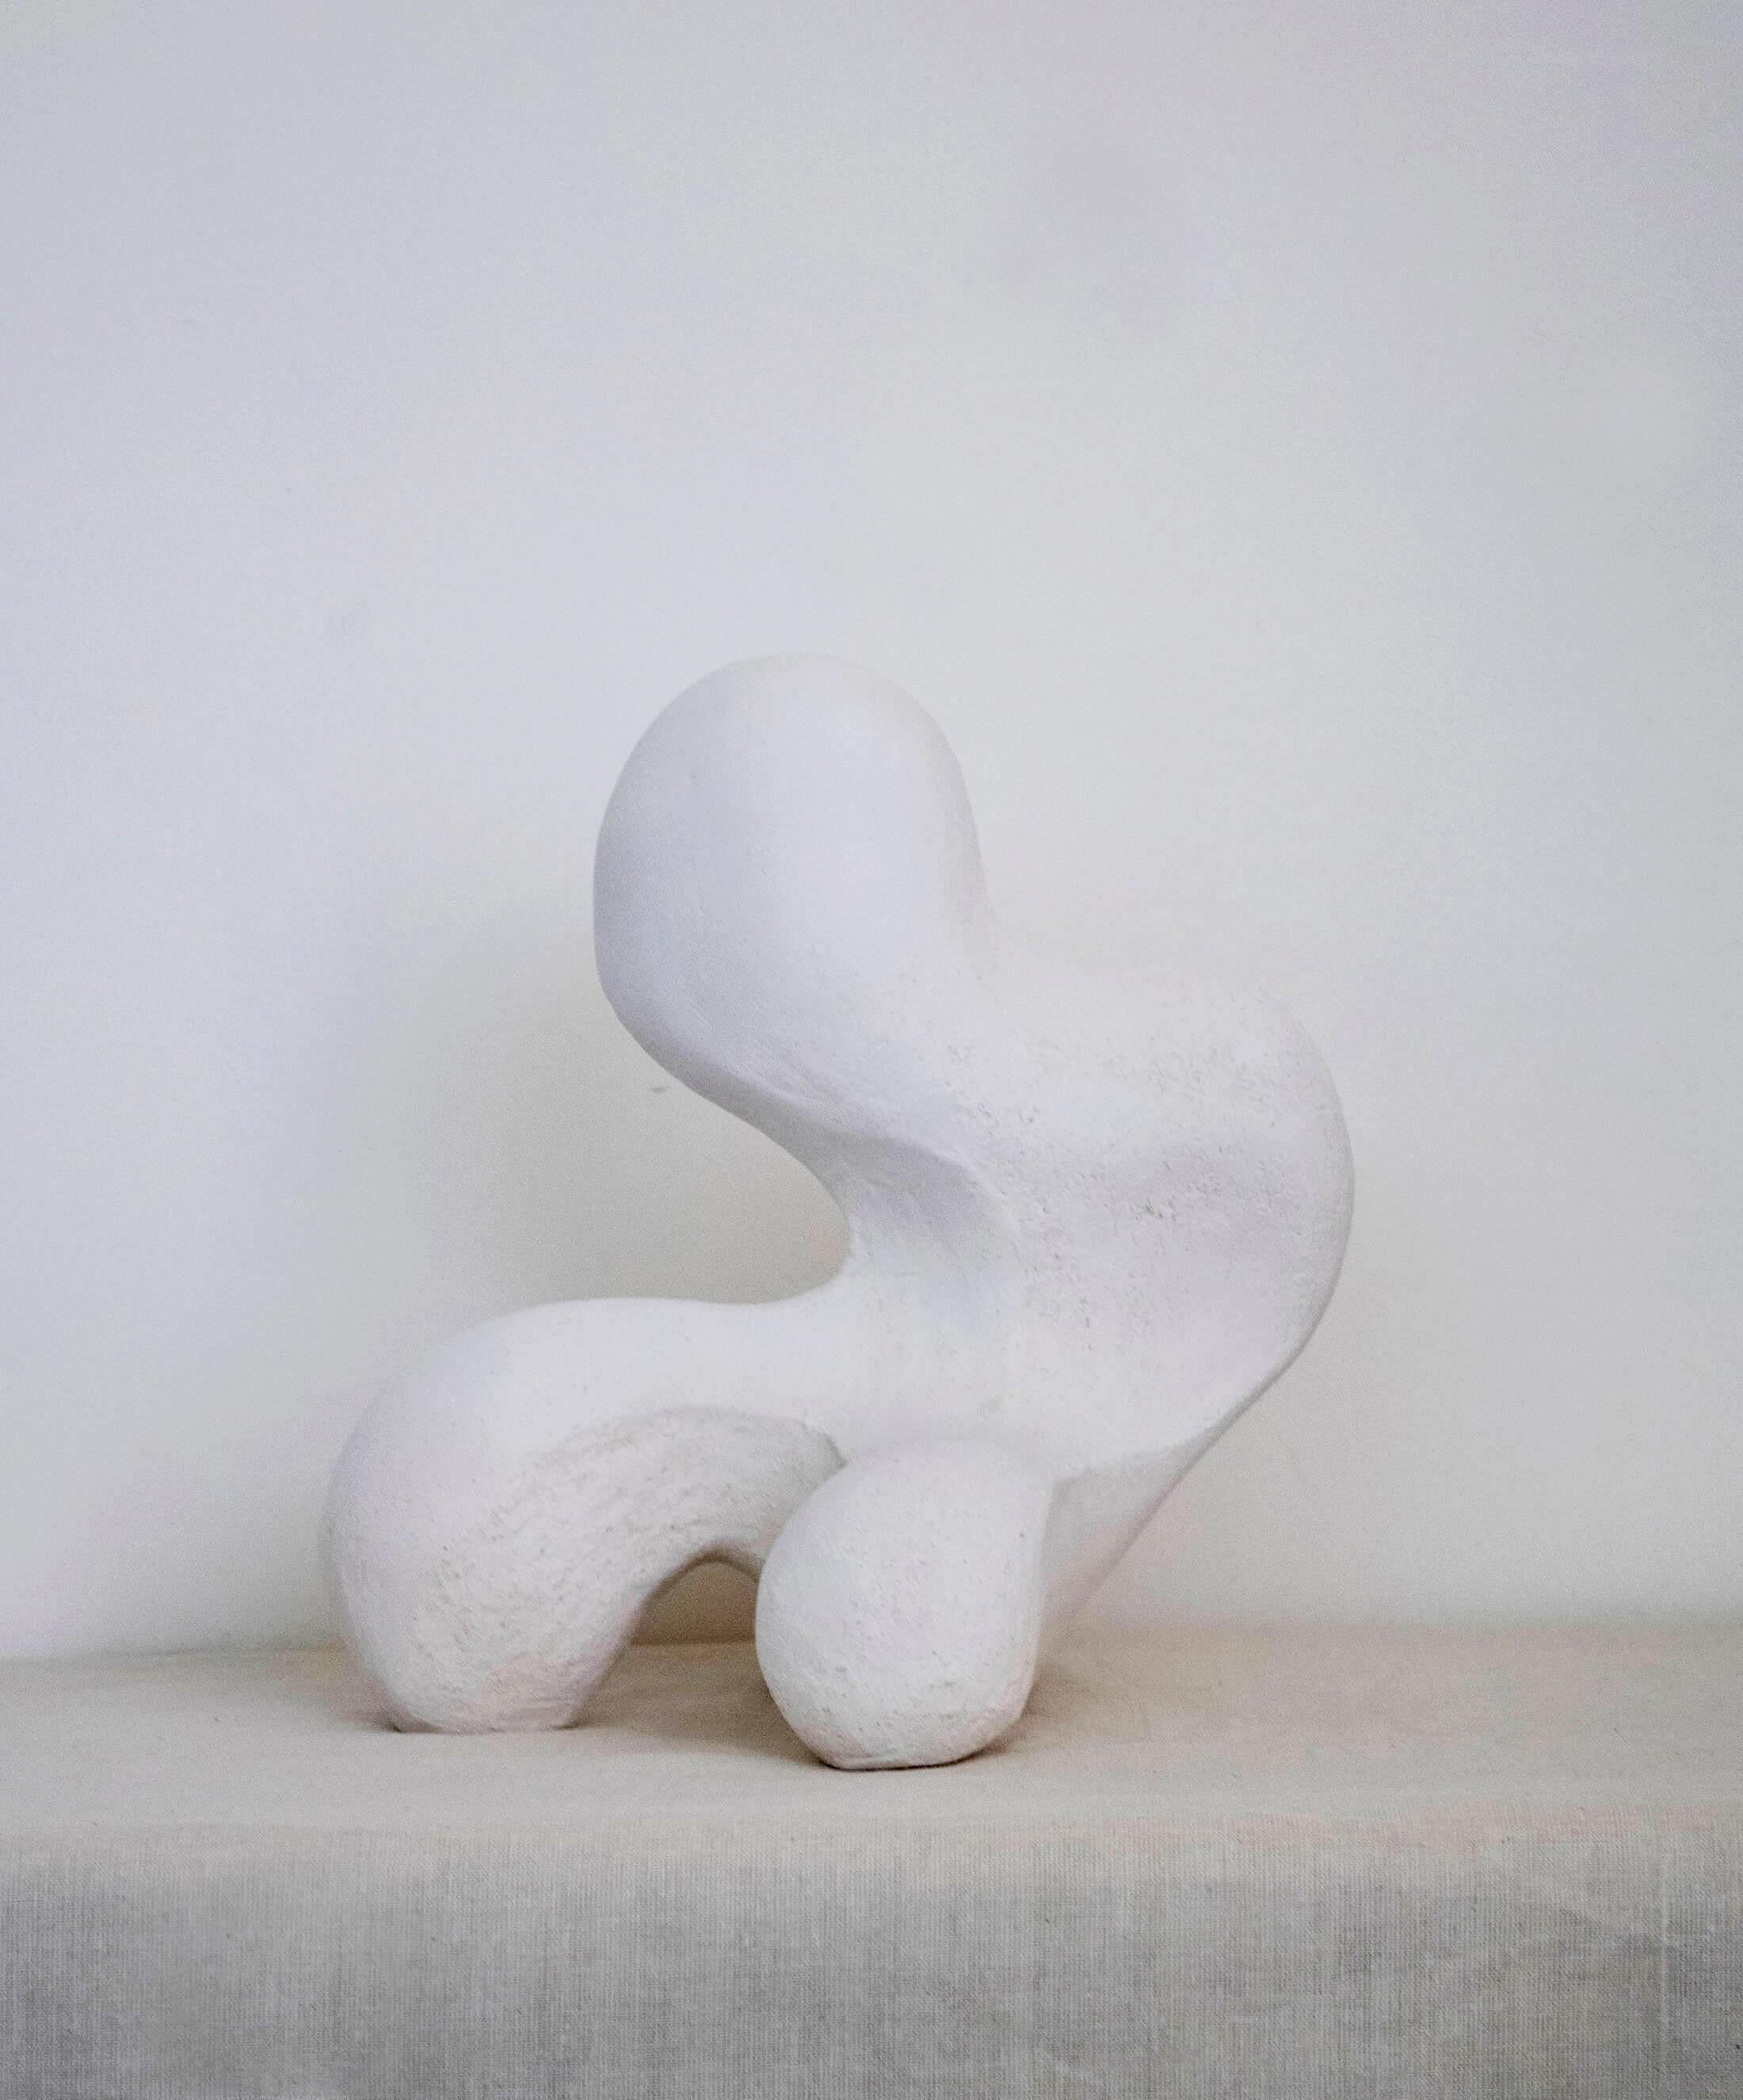 Buddy No_002 Skulptur von AOAO
Abmessungen: B 23 x T 28 x H 30 cm
MATERIALIEN: Keramik Biskuit
Farboptionen sind auf Anfrage erhältlich.

Die IDEA entstand, nachdem ich beschlossen hatte, mich mit meiner Familie und meinem Großvater - einem